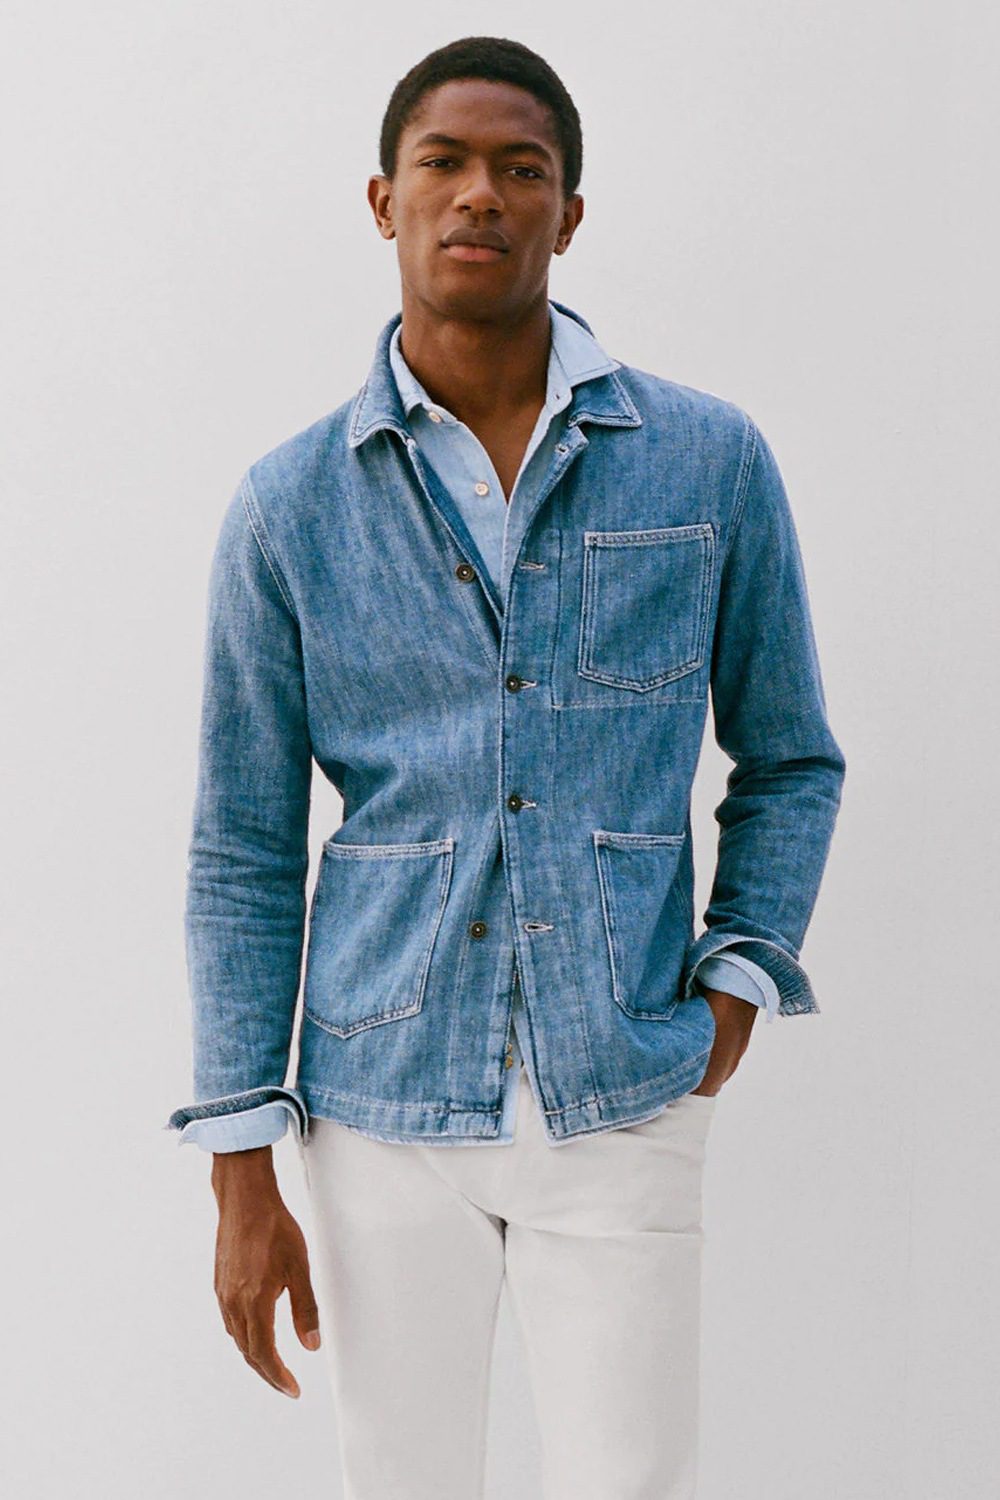 Åben Bemyndige krøllet 11 Ways To Wear A Denim Jean Jacket That Will Always Look Cool